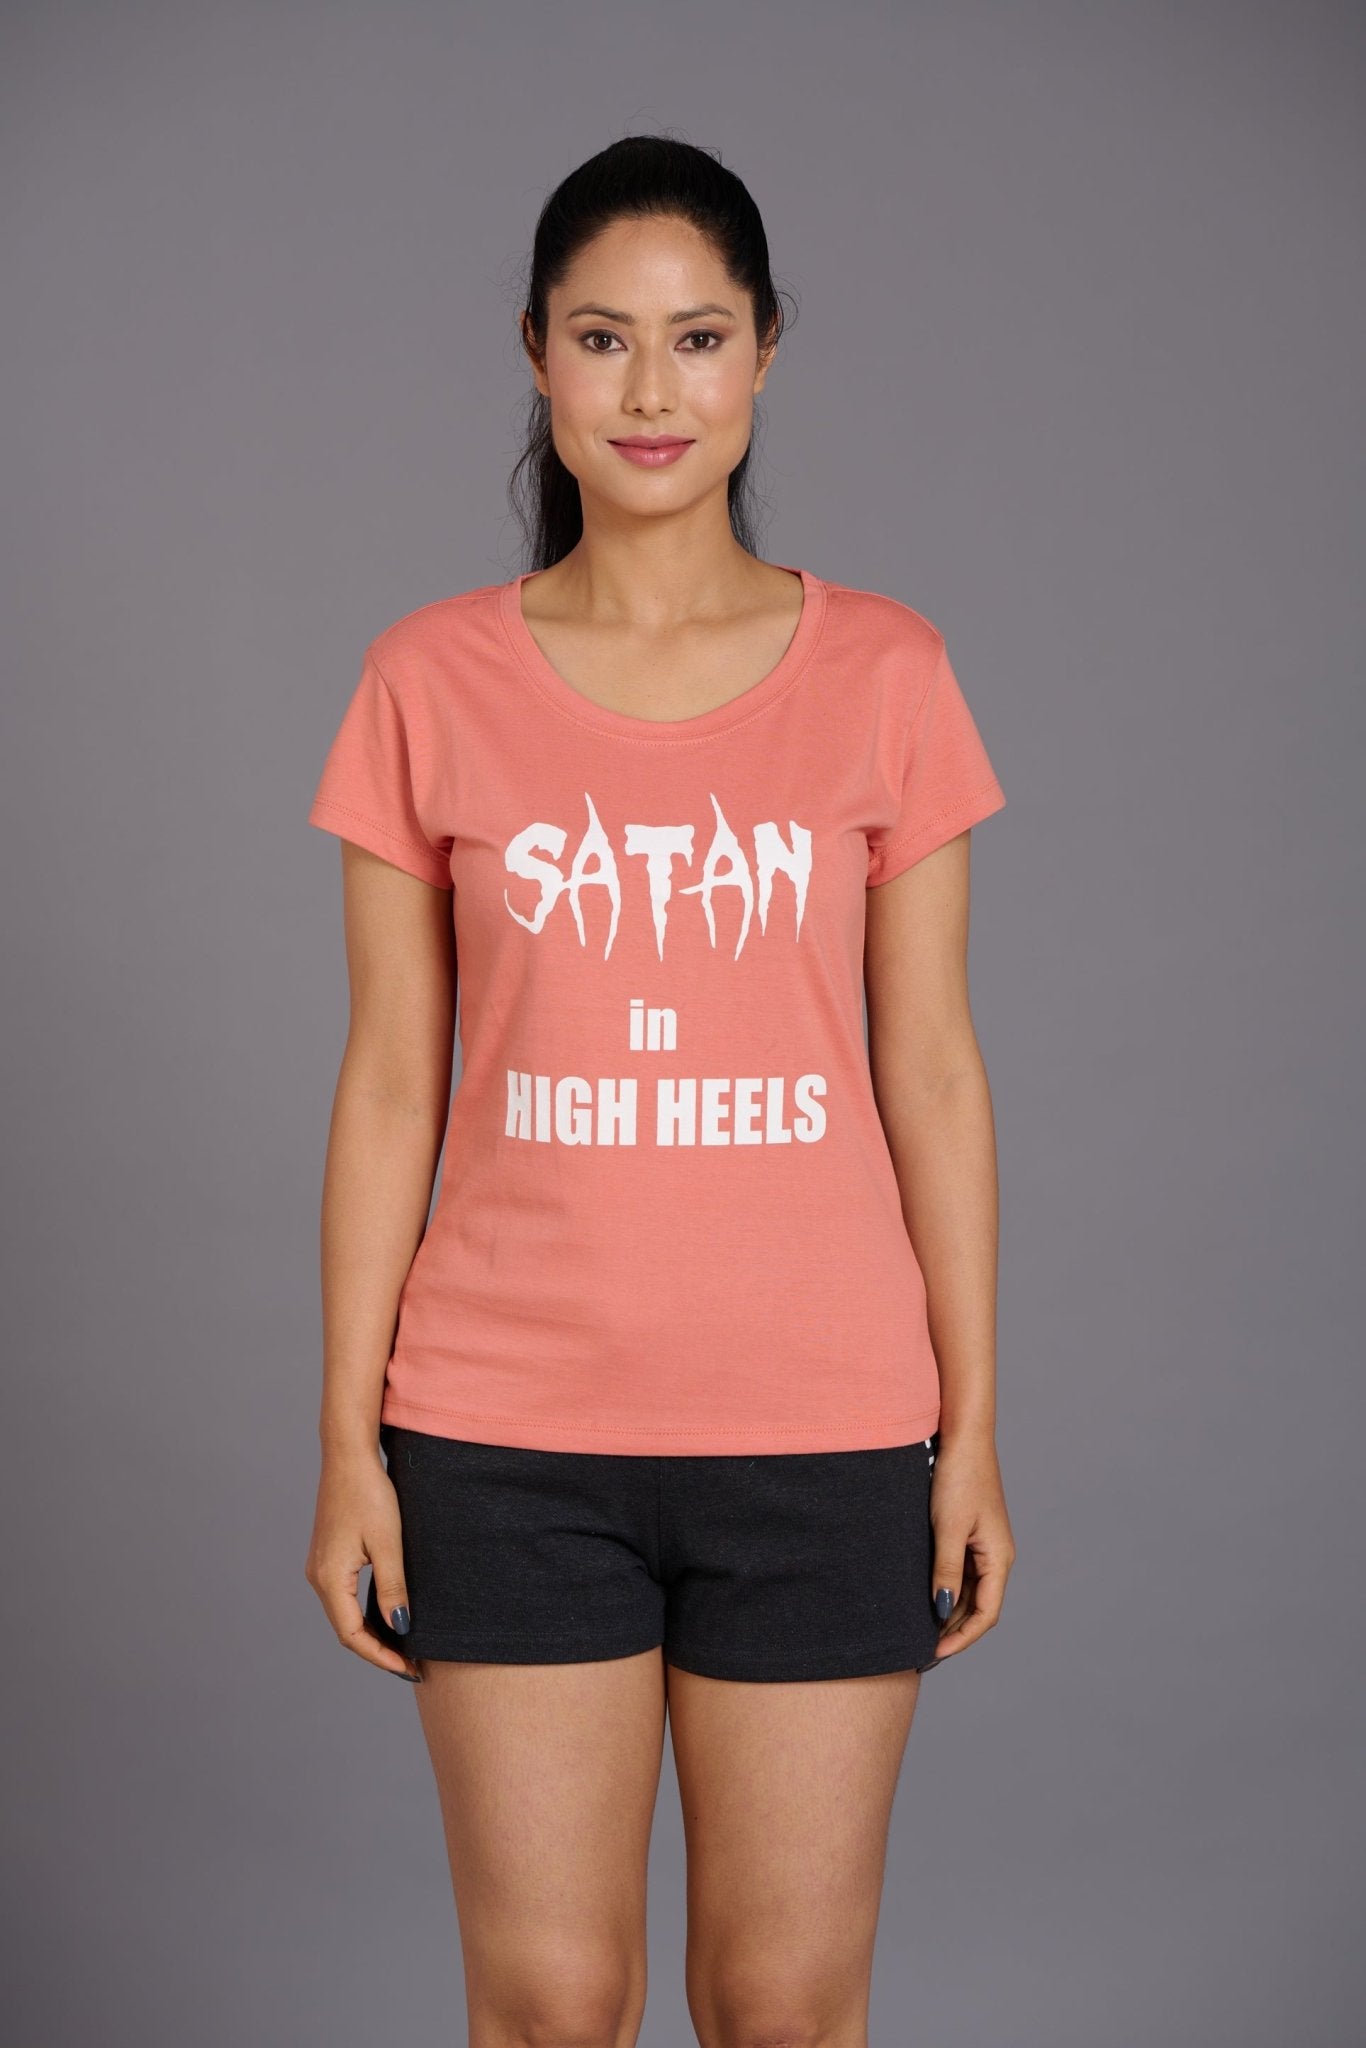 Satan in High Heels Printed Oversized T-Shirt for Women - Go Devil